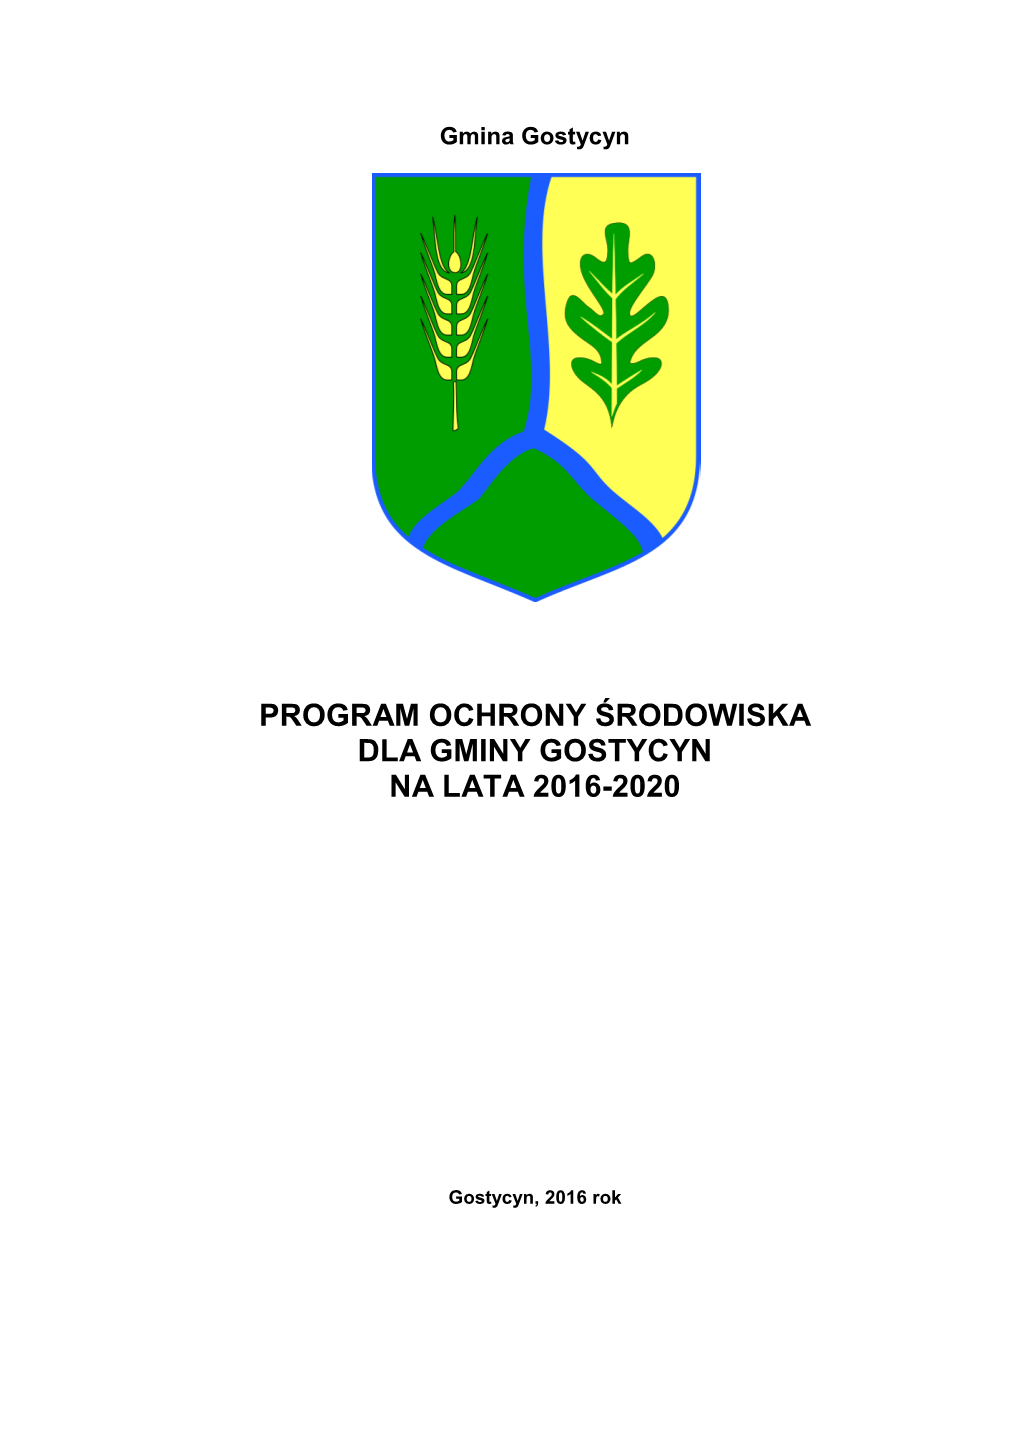 Program Ochrony Środowiska Dla Gminy Gostycyn Na Lata 2016-2020